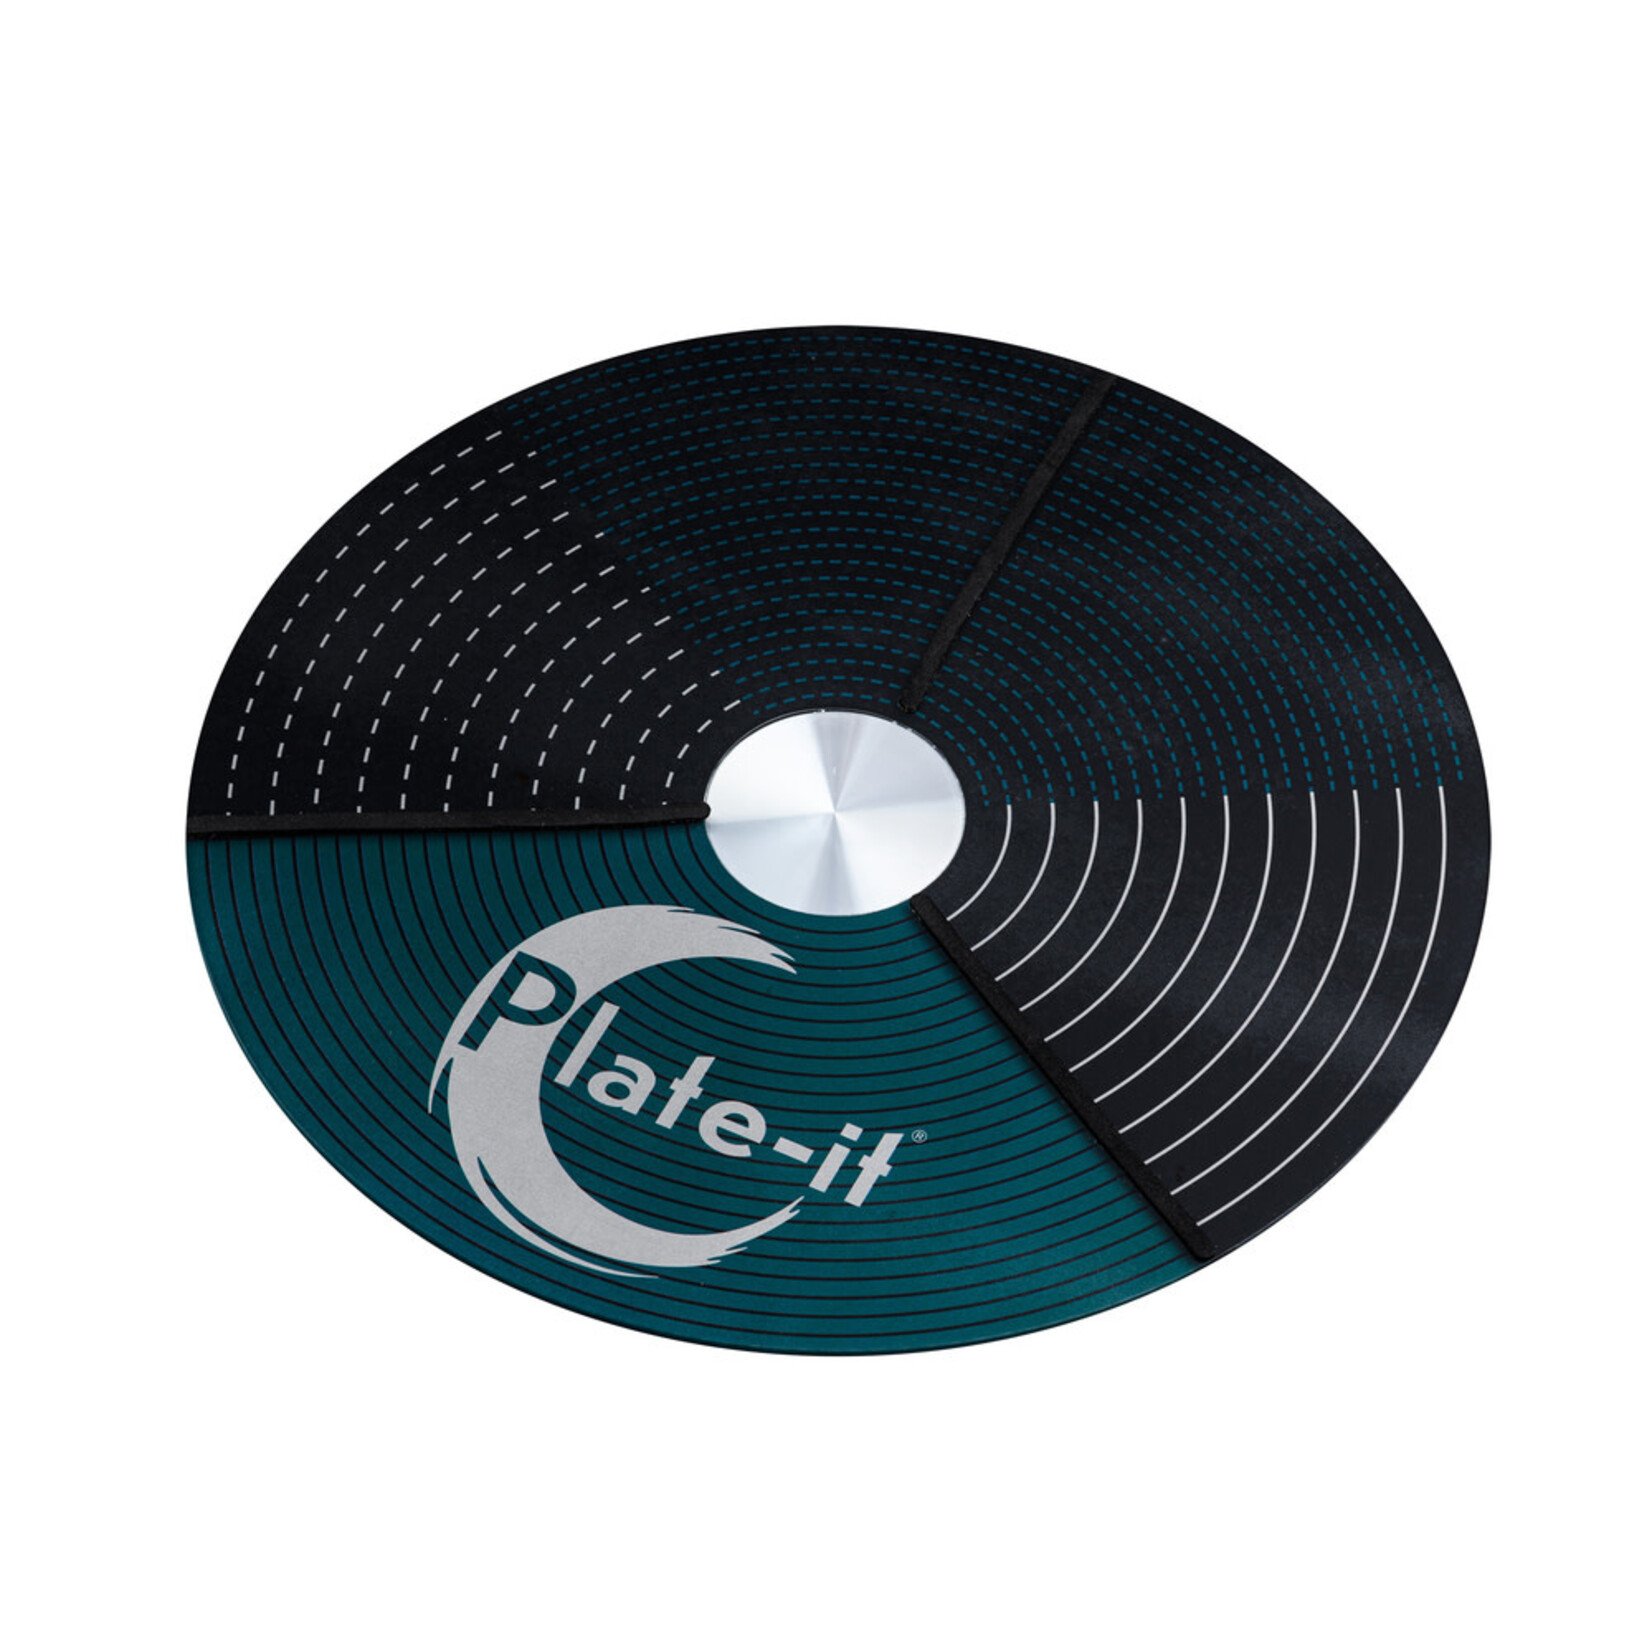 Plate-It, like a pro! bord opmaak draaiplateau Plate-it draaiplateau glas 30 cm Plate it PLturntable